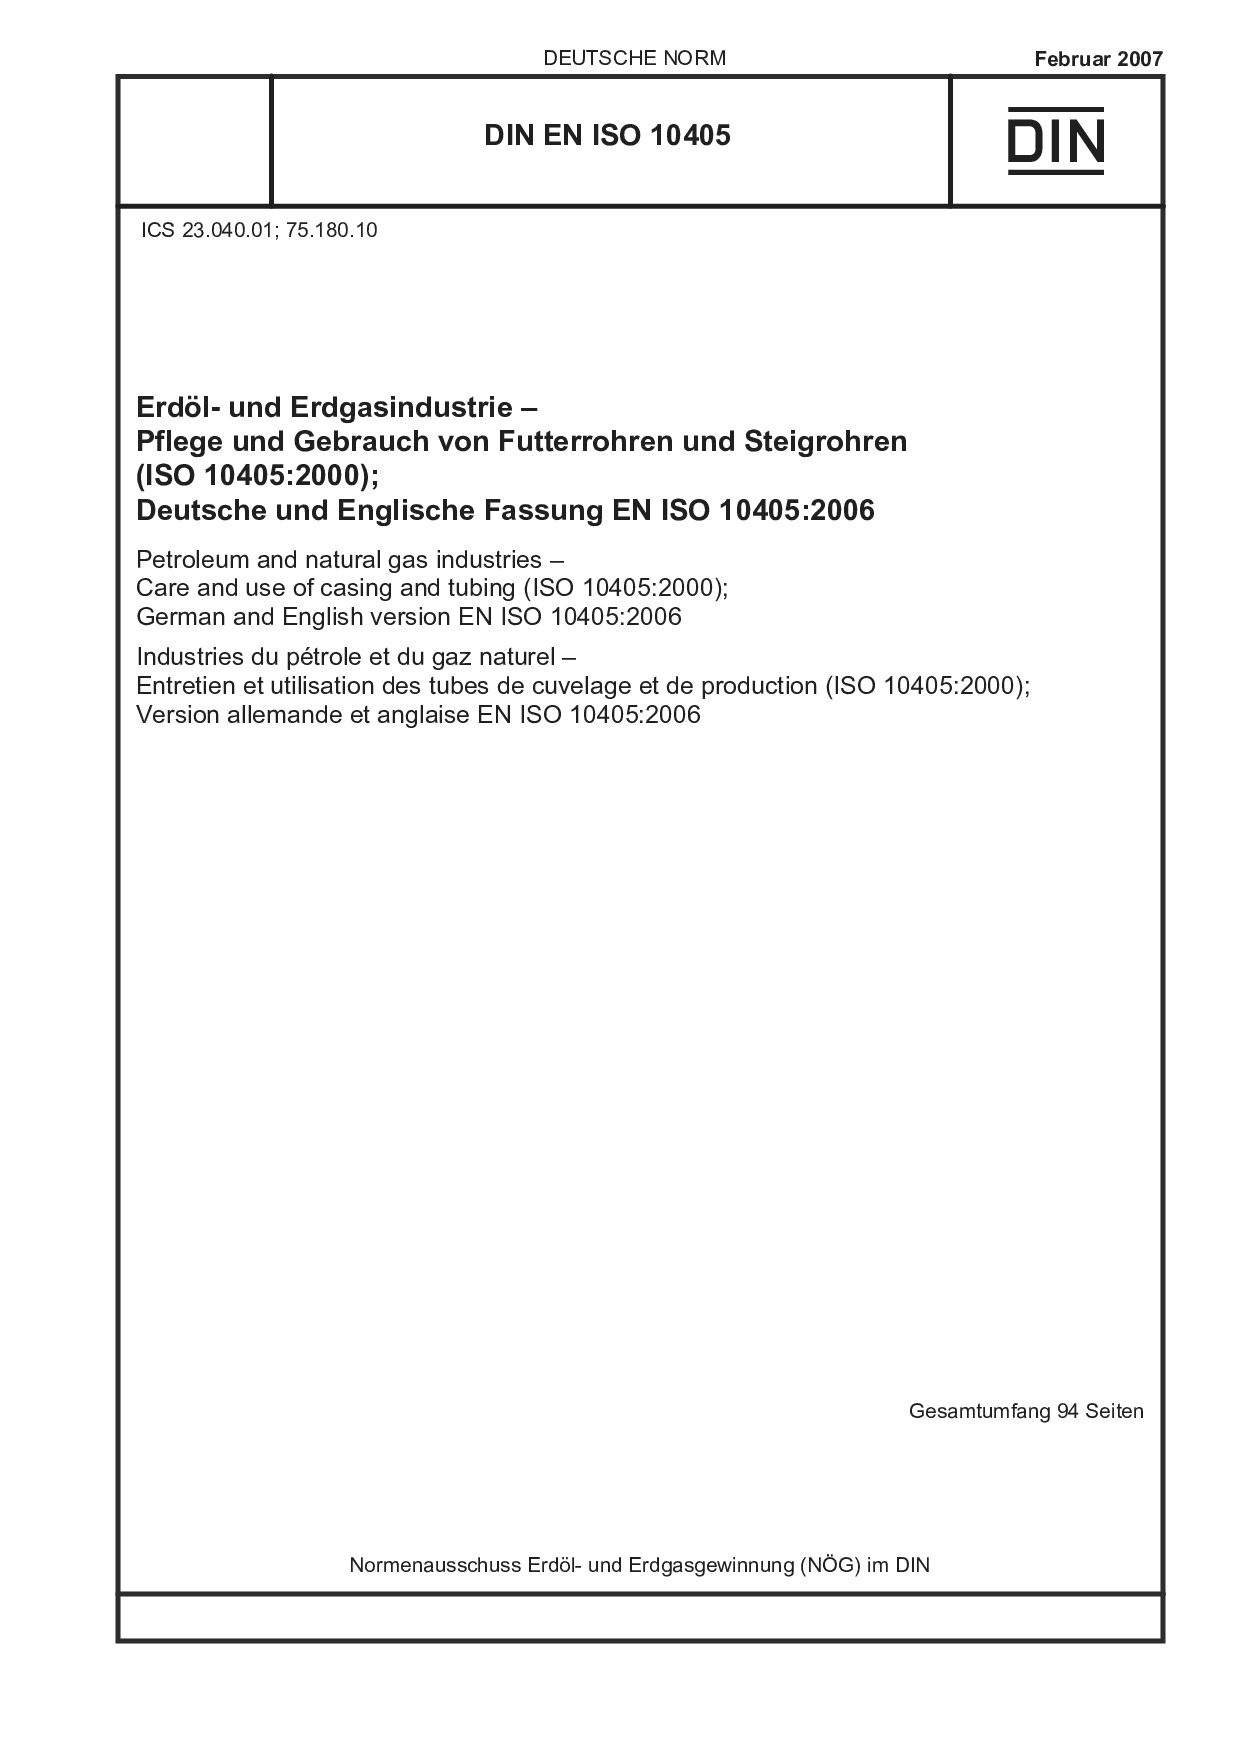 DIN EN ISO 10405:2007封面图